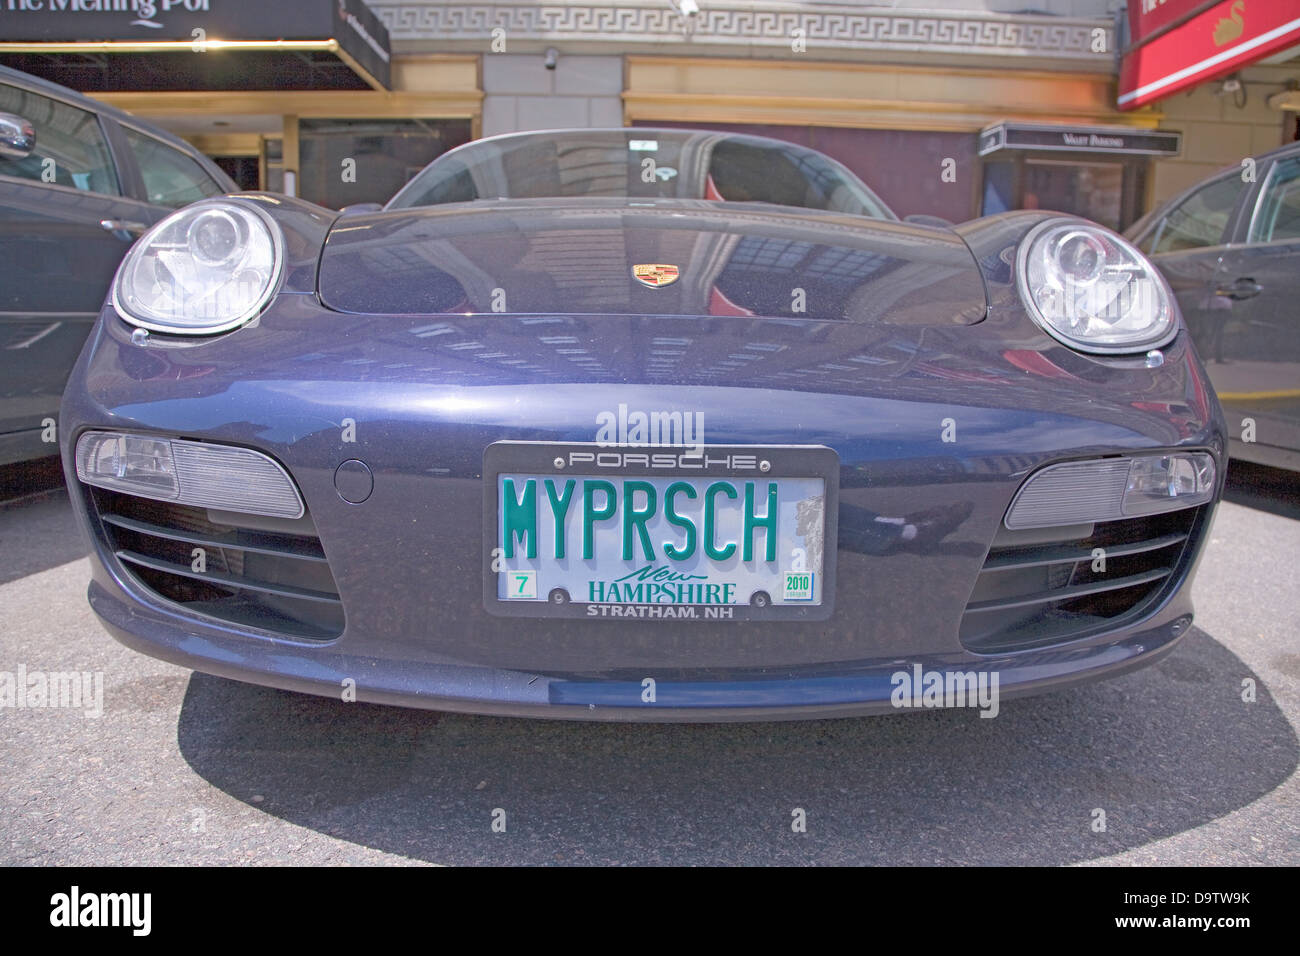 New Hampshire license plate reads My Porsche, Boston, MA. Stock Photo